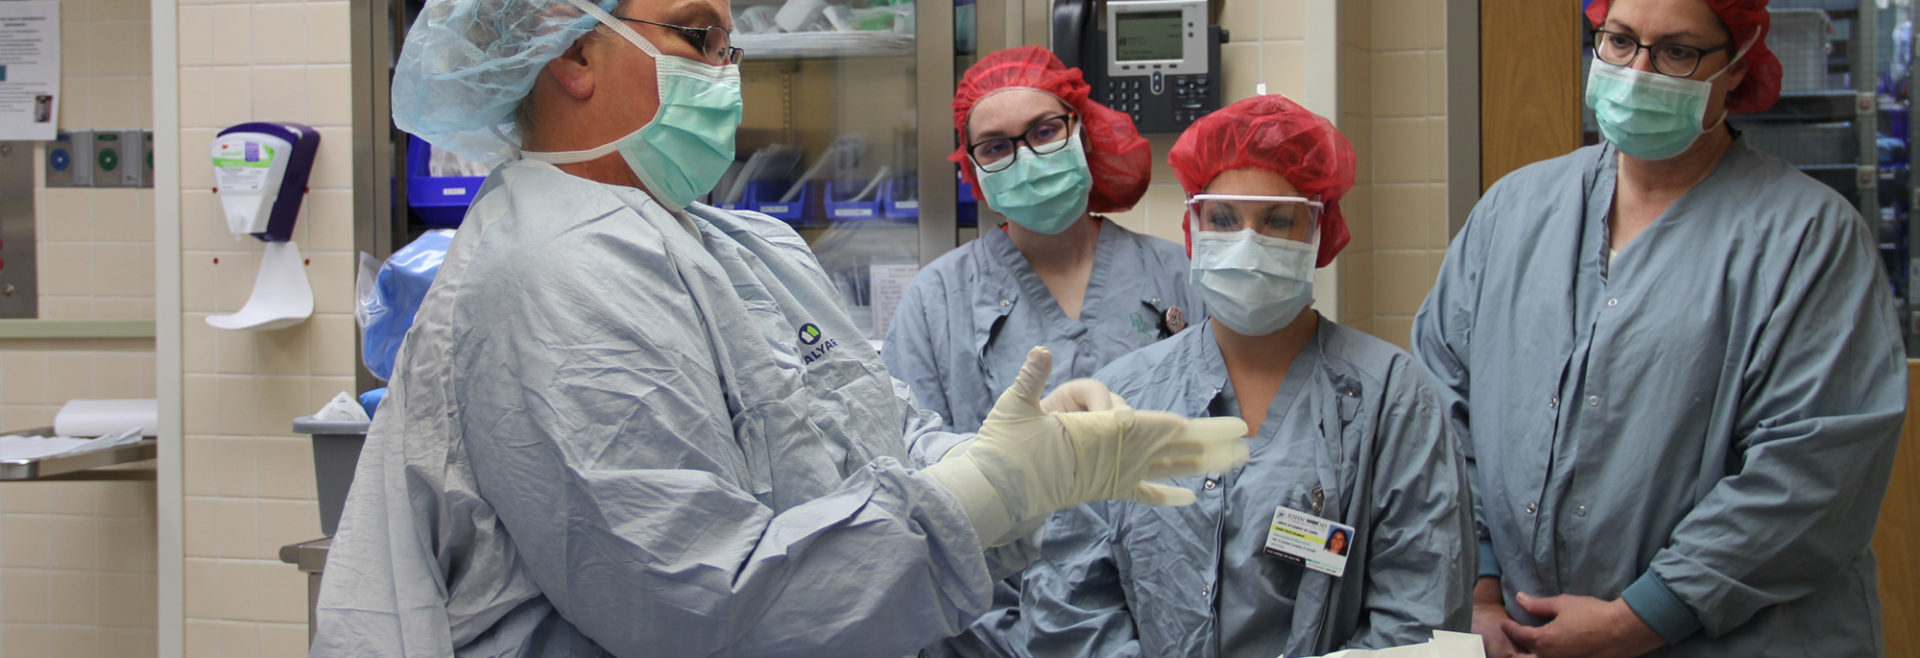 四个外科技术学生 看如何戴手套